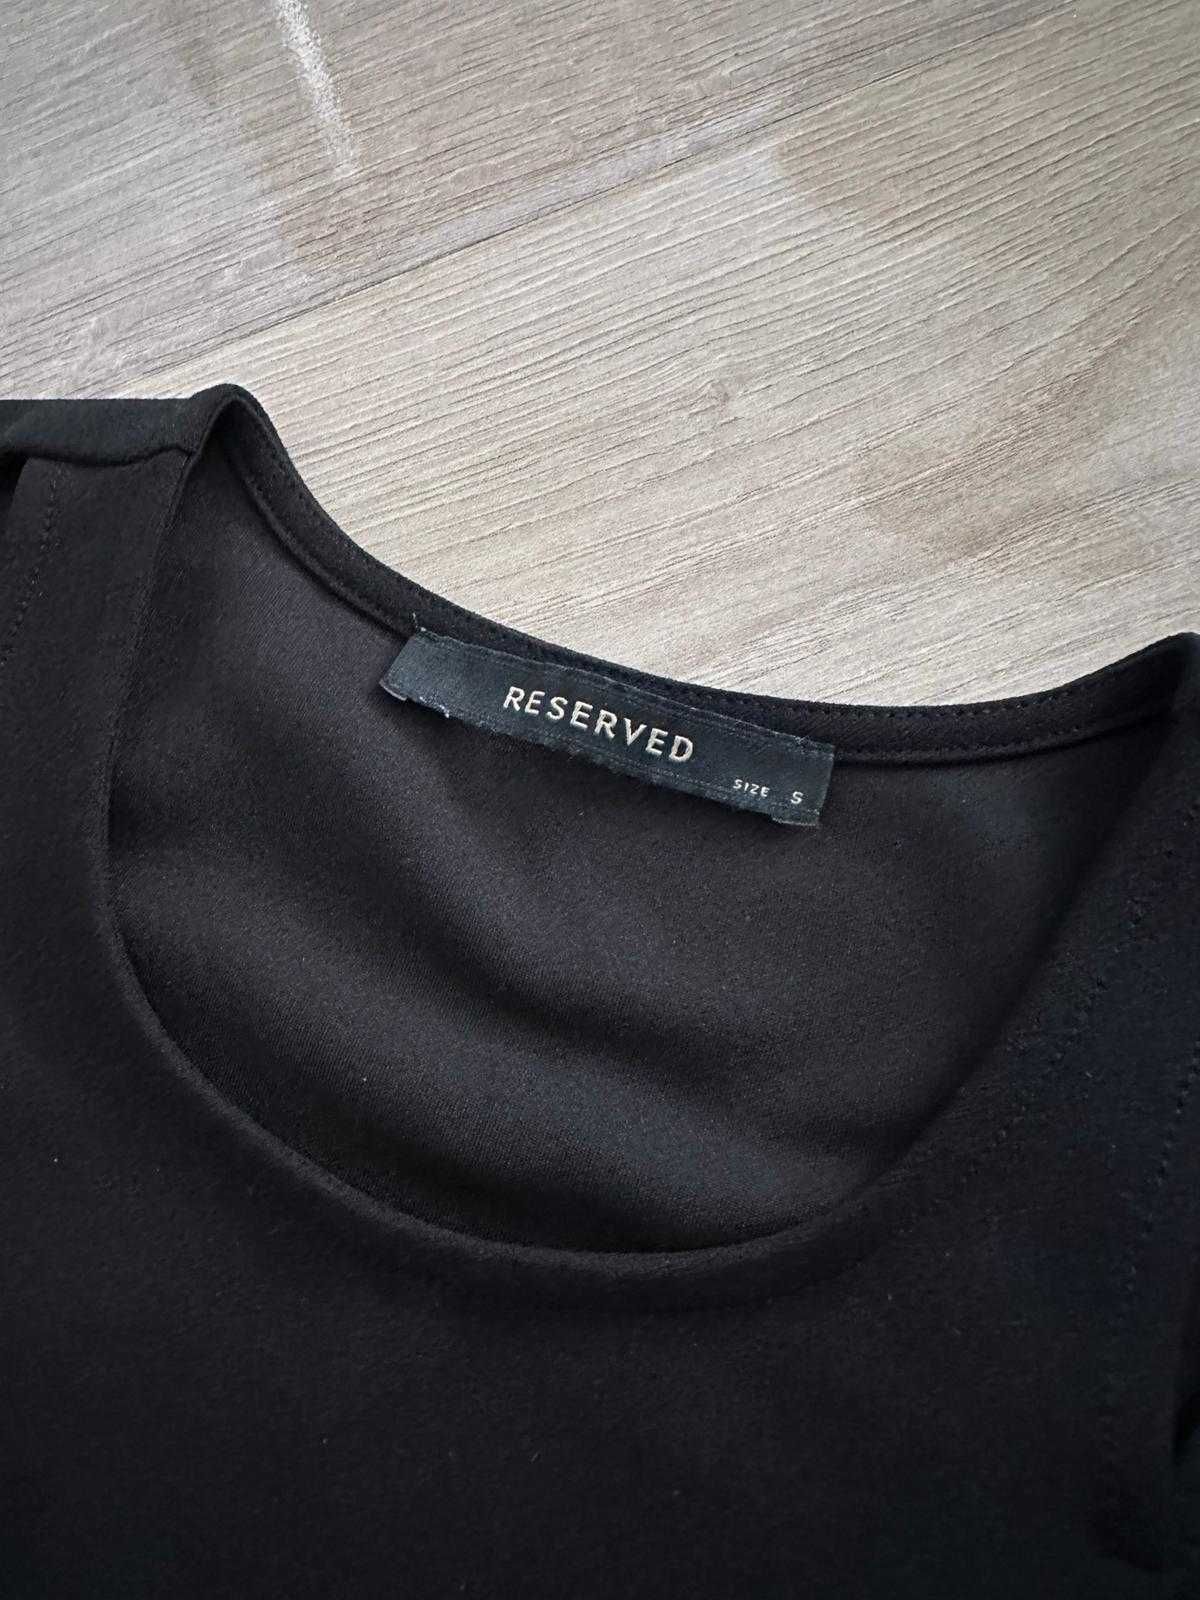 Elegancka Czarna bluzka na krótki rękaw - Reserved - rozmiar S